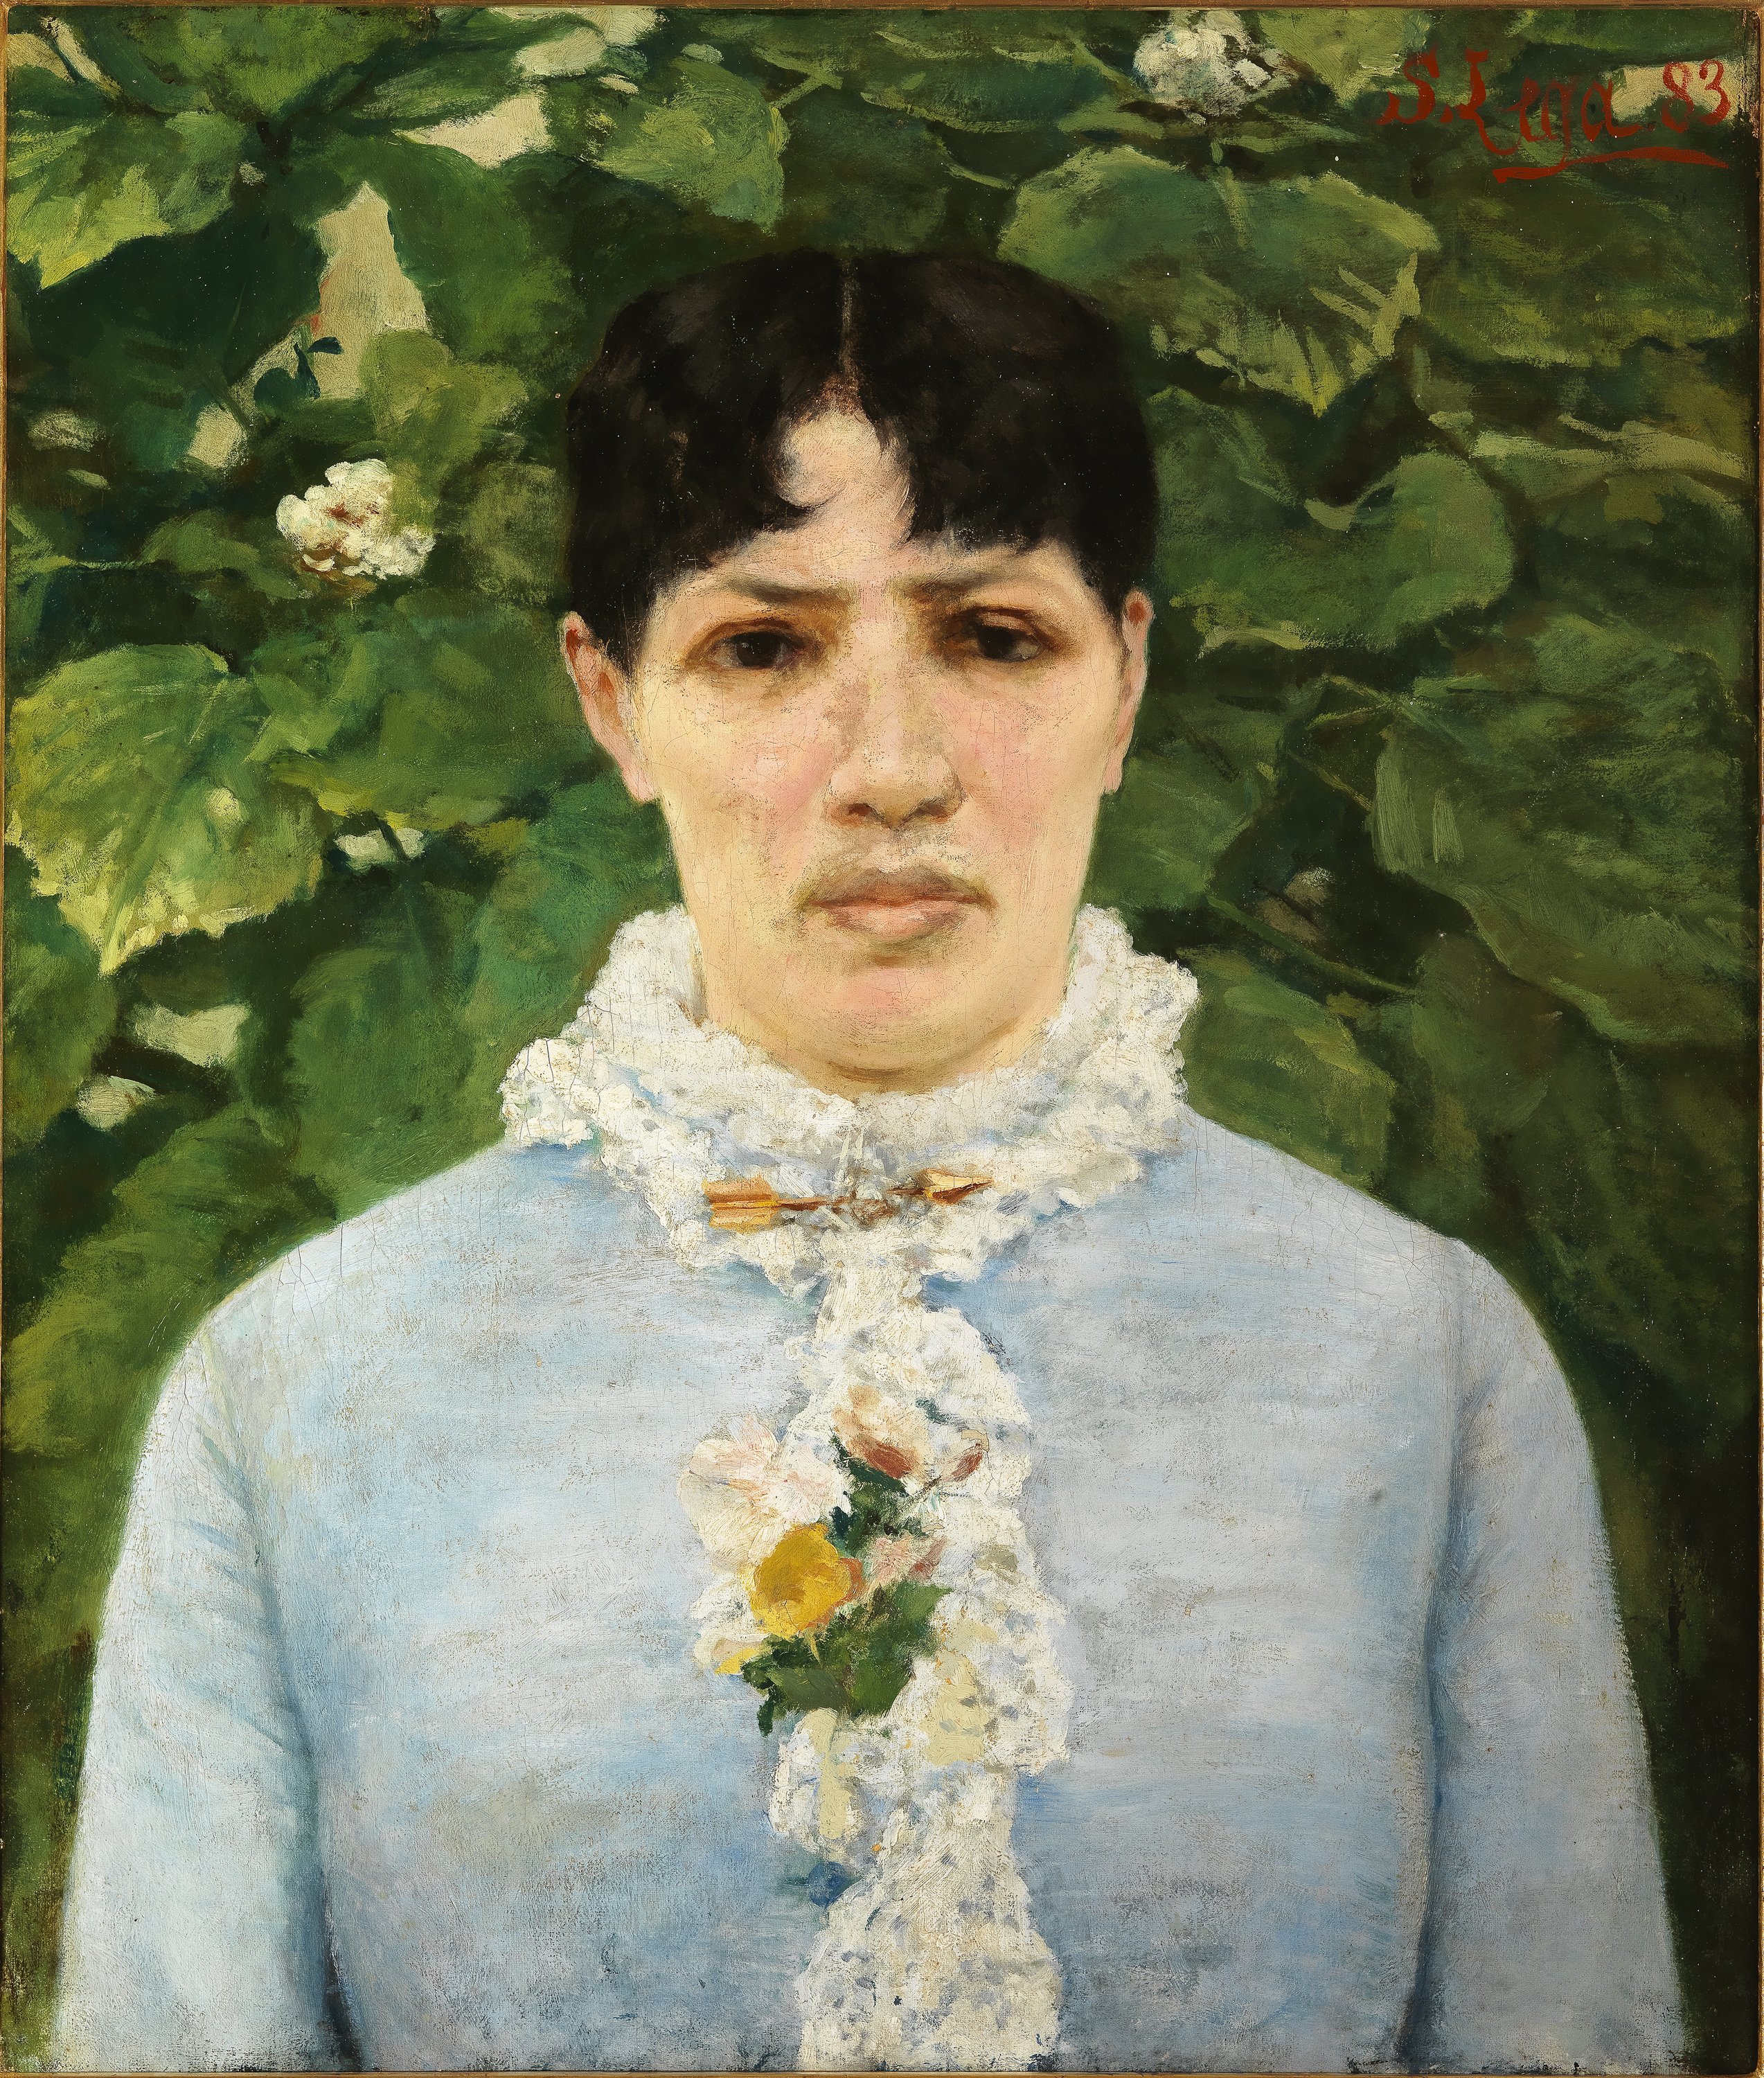 Le Gallerie degli Uffizi ricevono in dono il "Ritratto di signora in giardino", una delle opere più importanti e significative del percorso artistico di Silvestro Lega